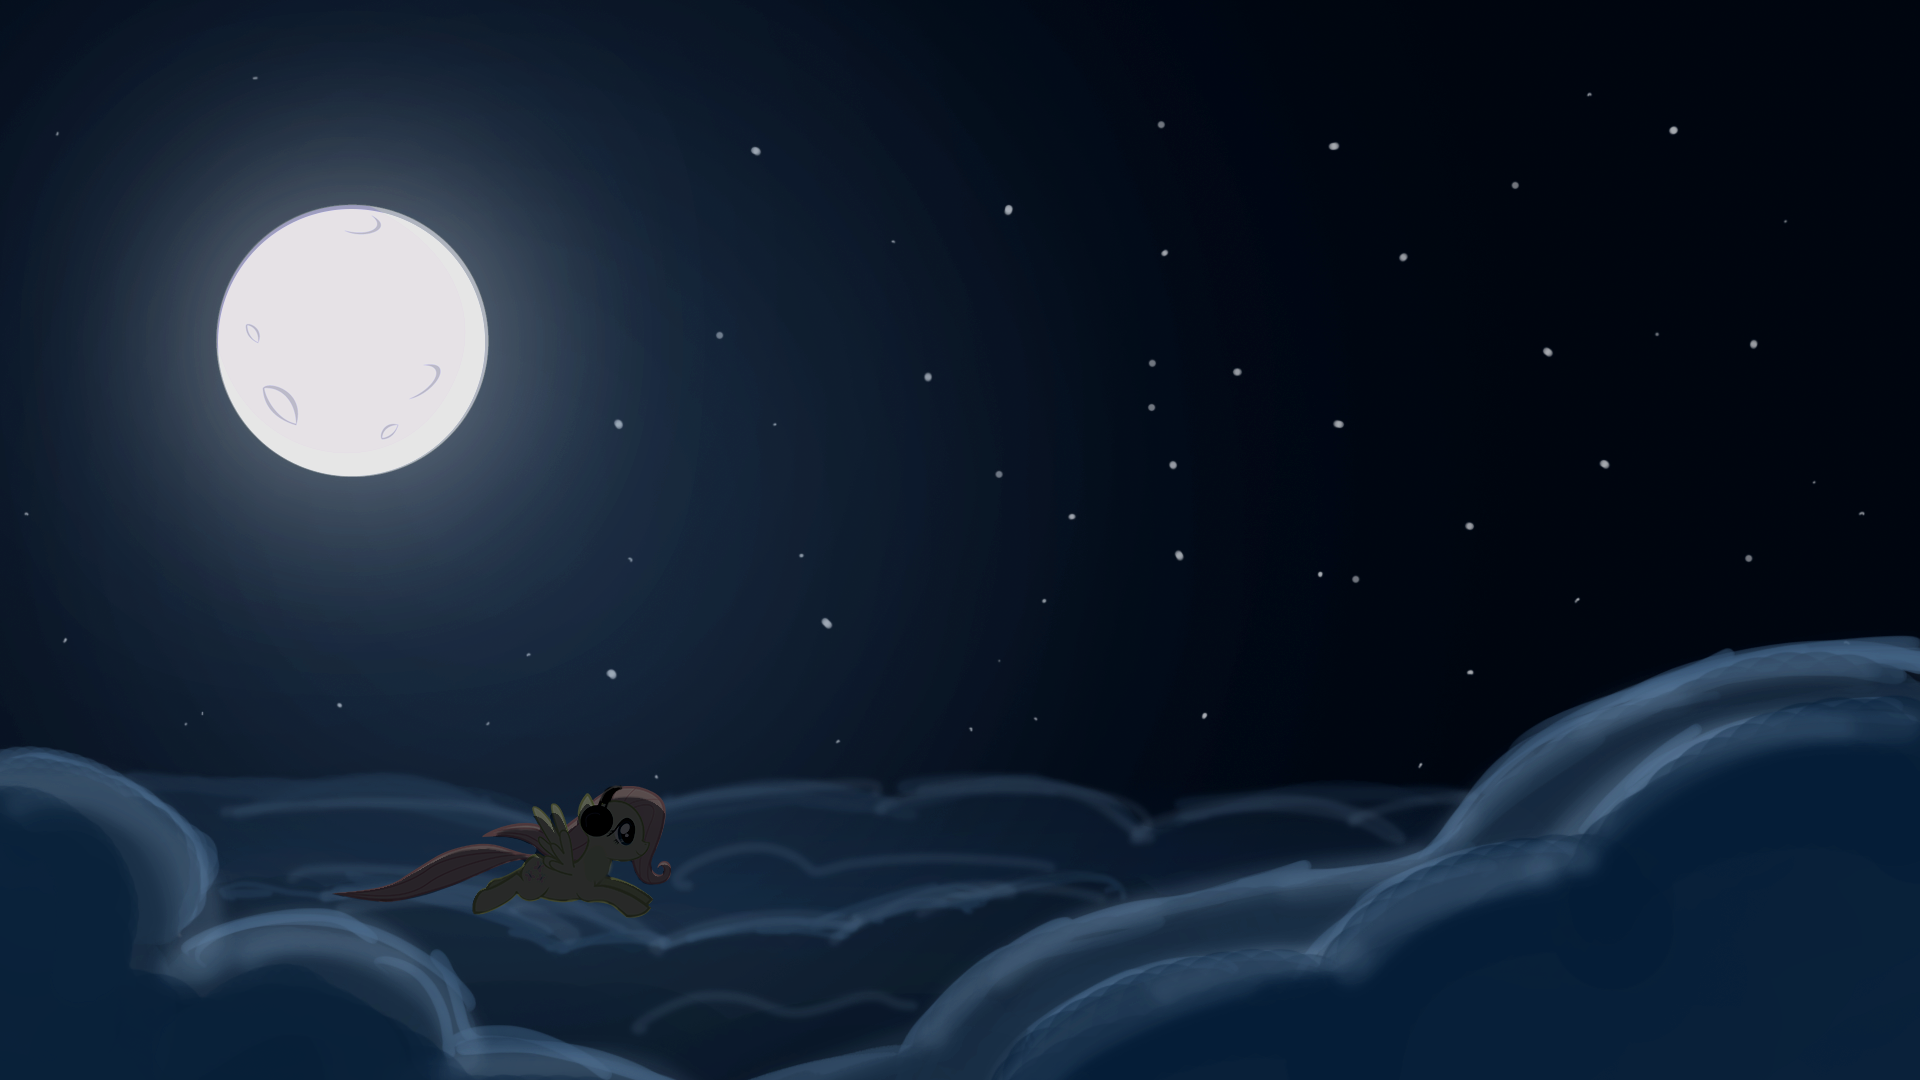 Чудесны лунные мартовские ночи впр 5. Лунный пейзаж. Фон ночь. Сказочная Луна. Ночное небо мультяшное.